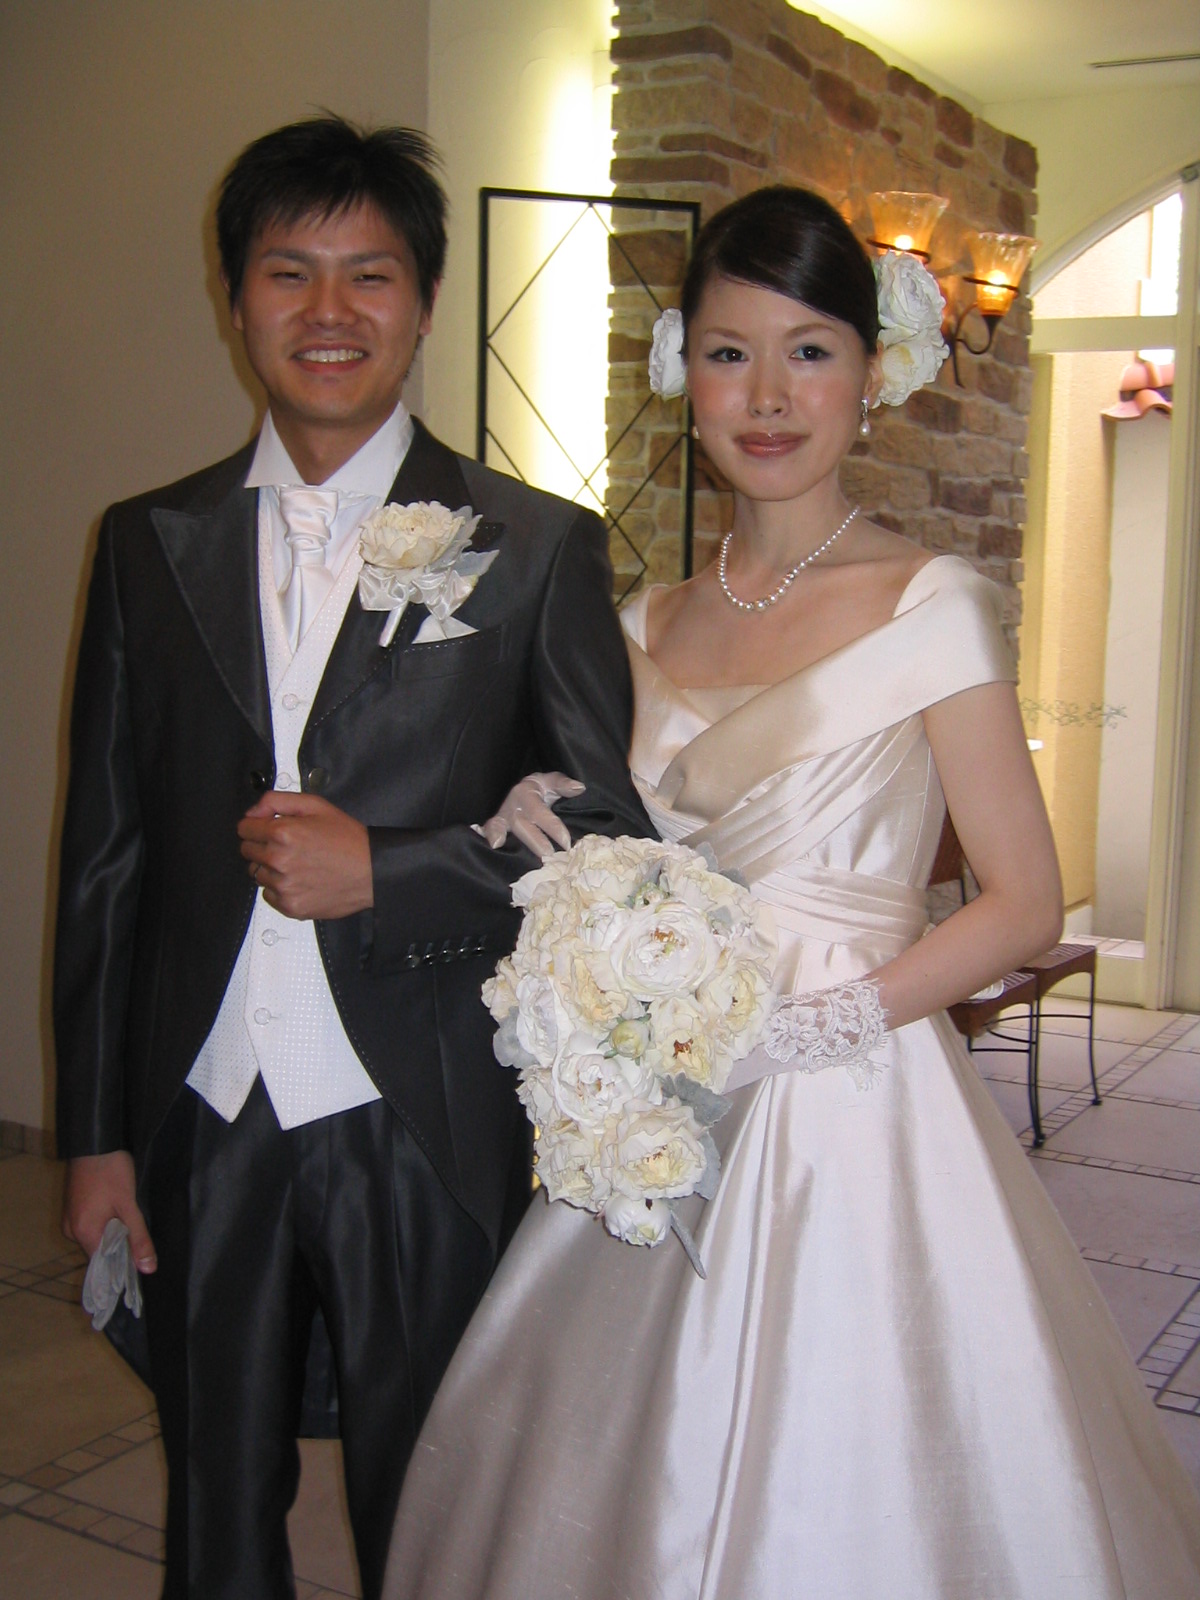 ケーオーホテル クラシカルなウエディングドレス Weddingブログ By Stylishgarden Mitaka